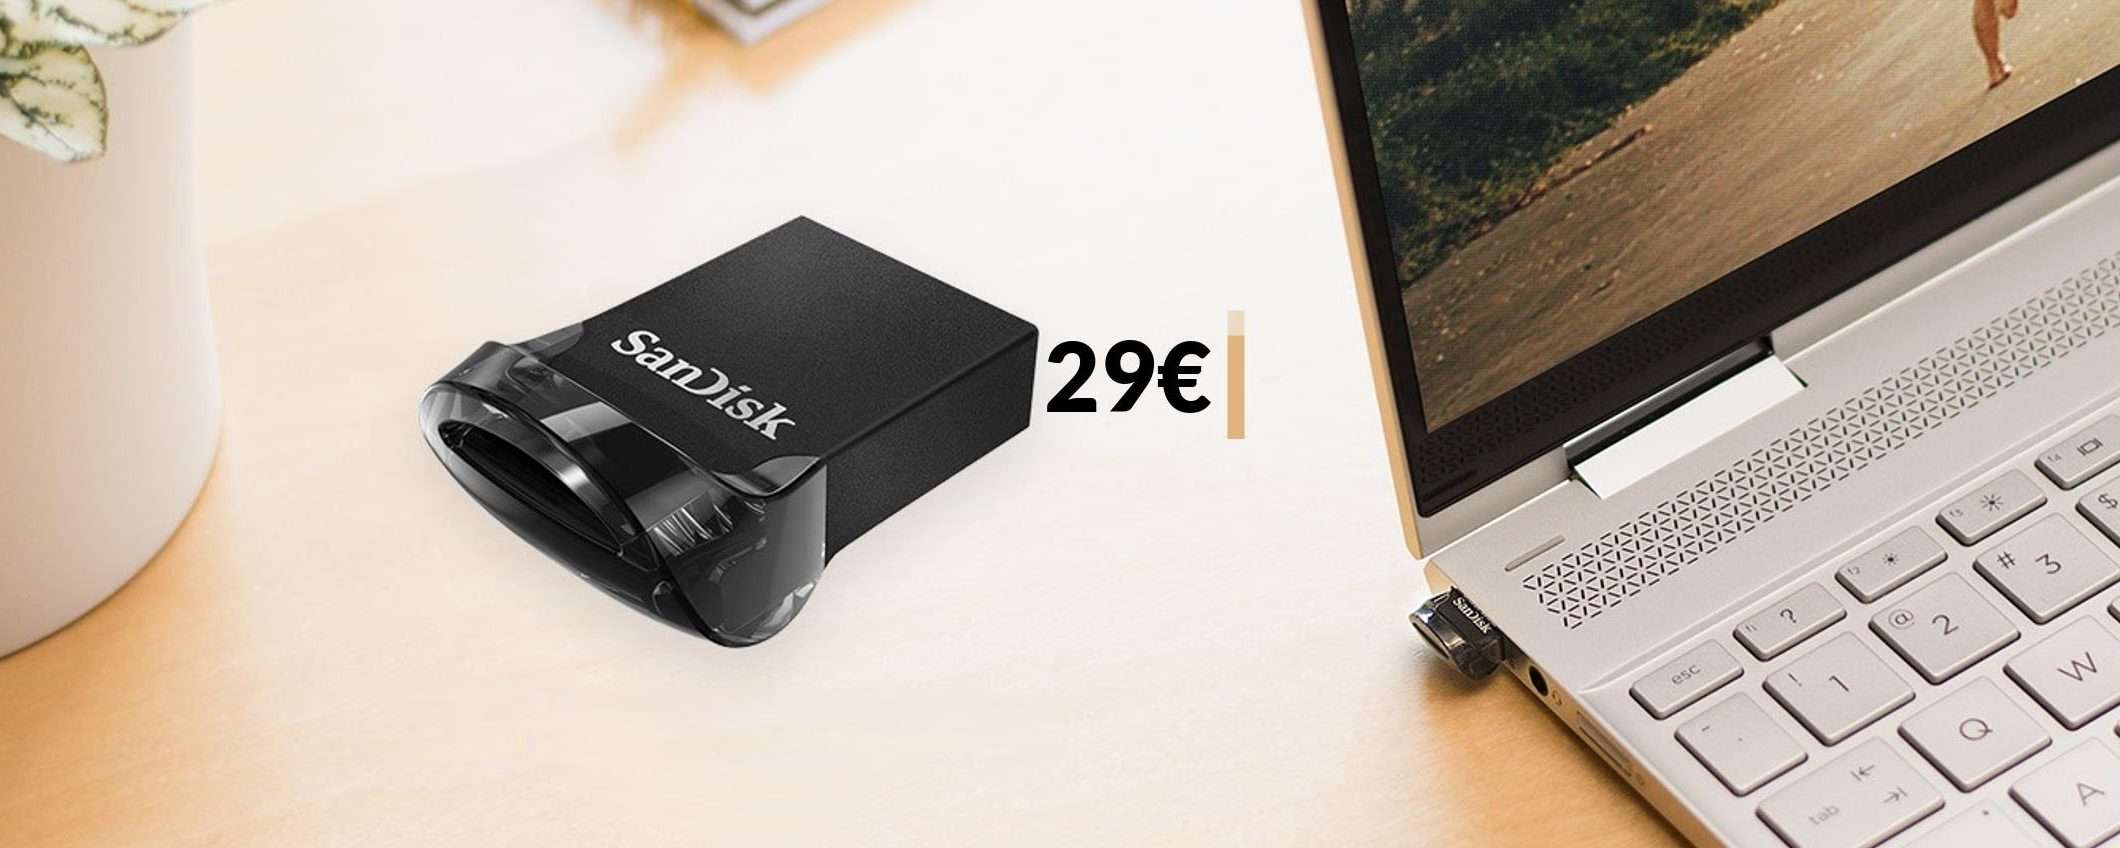 Chiavetta USB 256GB: un fulmine, pur essendo piccolissima (29€)